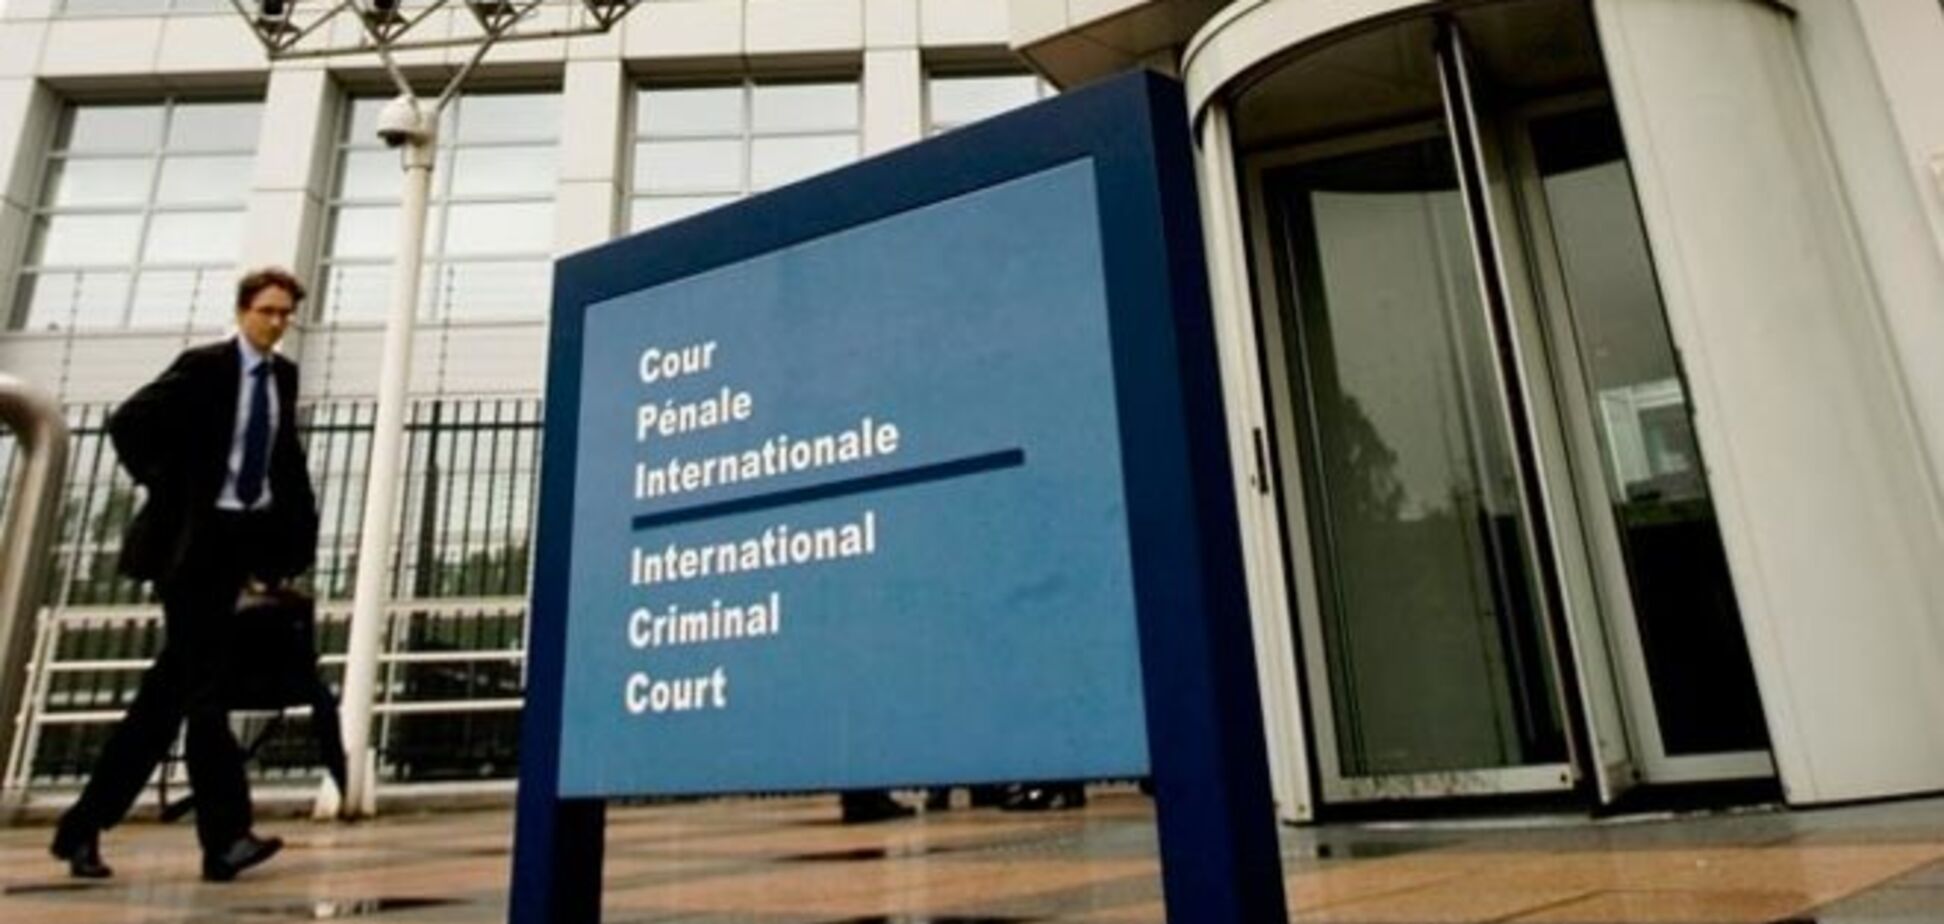 Частичное признание юрисдикции Гаагского трибунала не убережет украинскую власть от преследований - правозащитник